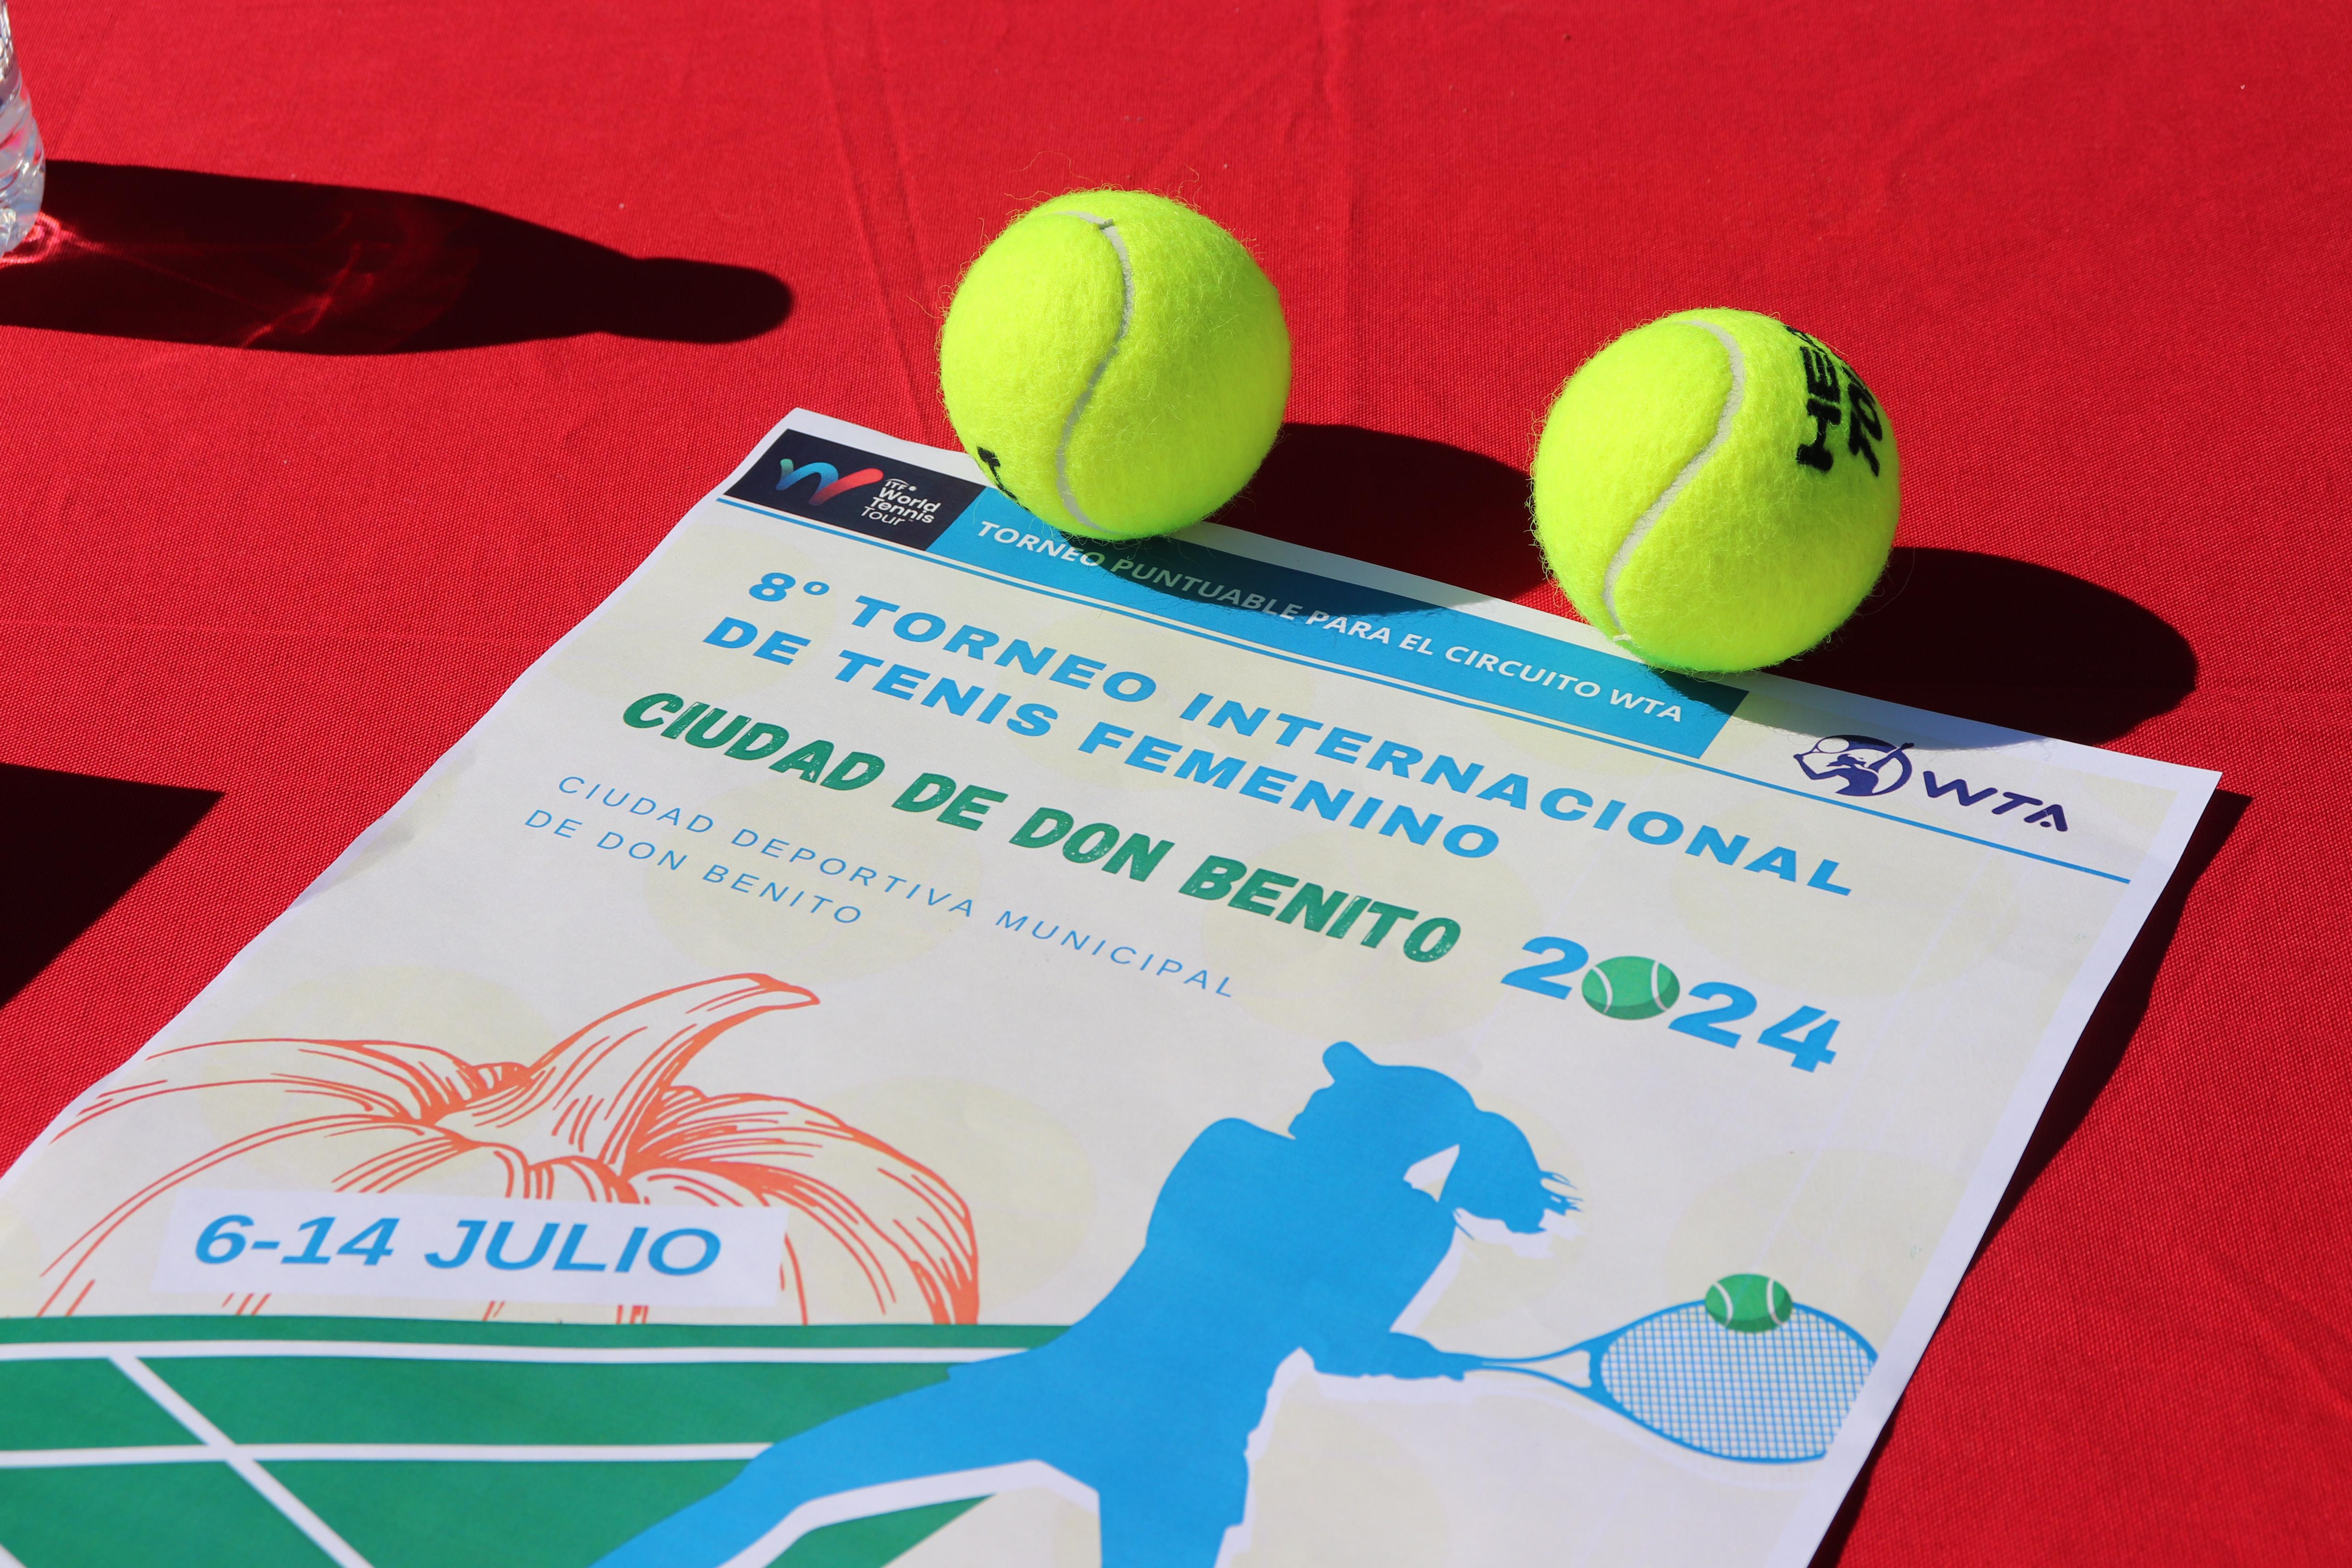 Image 5 of article La Junta de Extremadura apoya el VIII Torneo Internacional de Tenis Femenino que se celebrará en Don Benito del 6 al 14 de julio